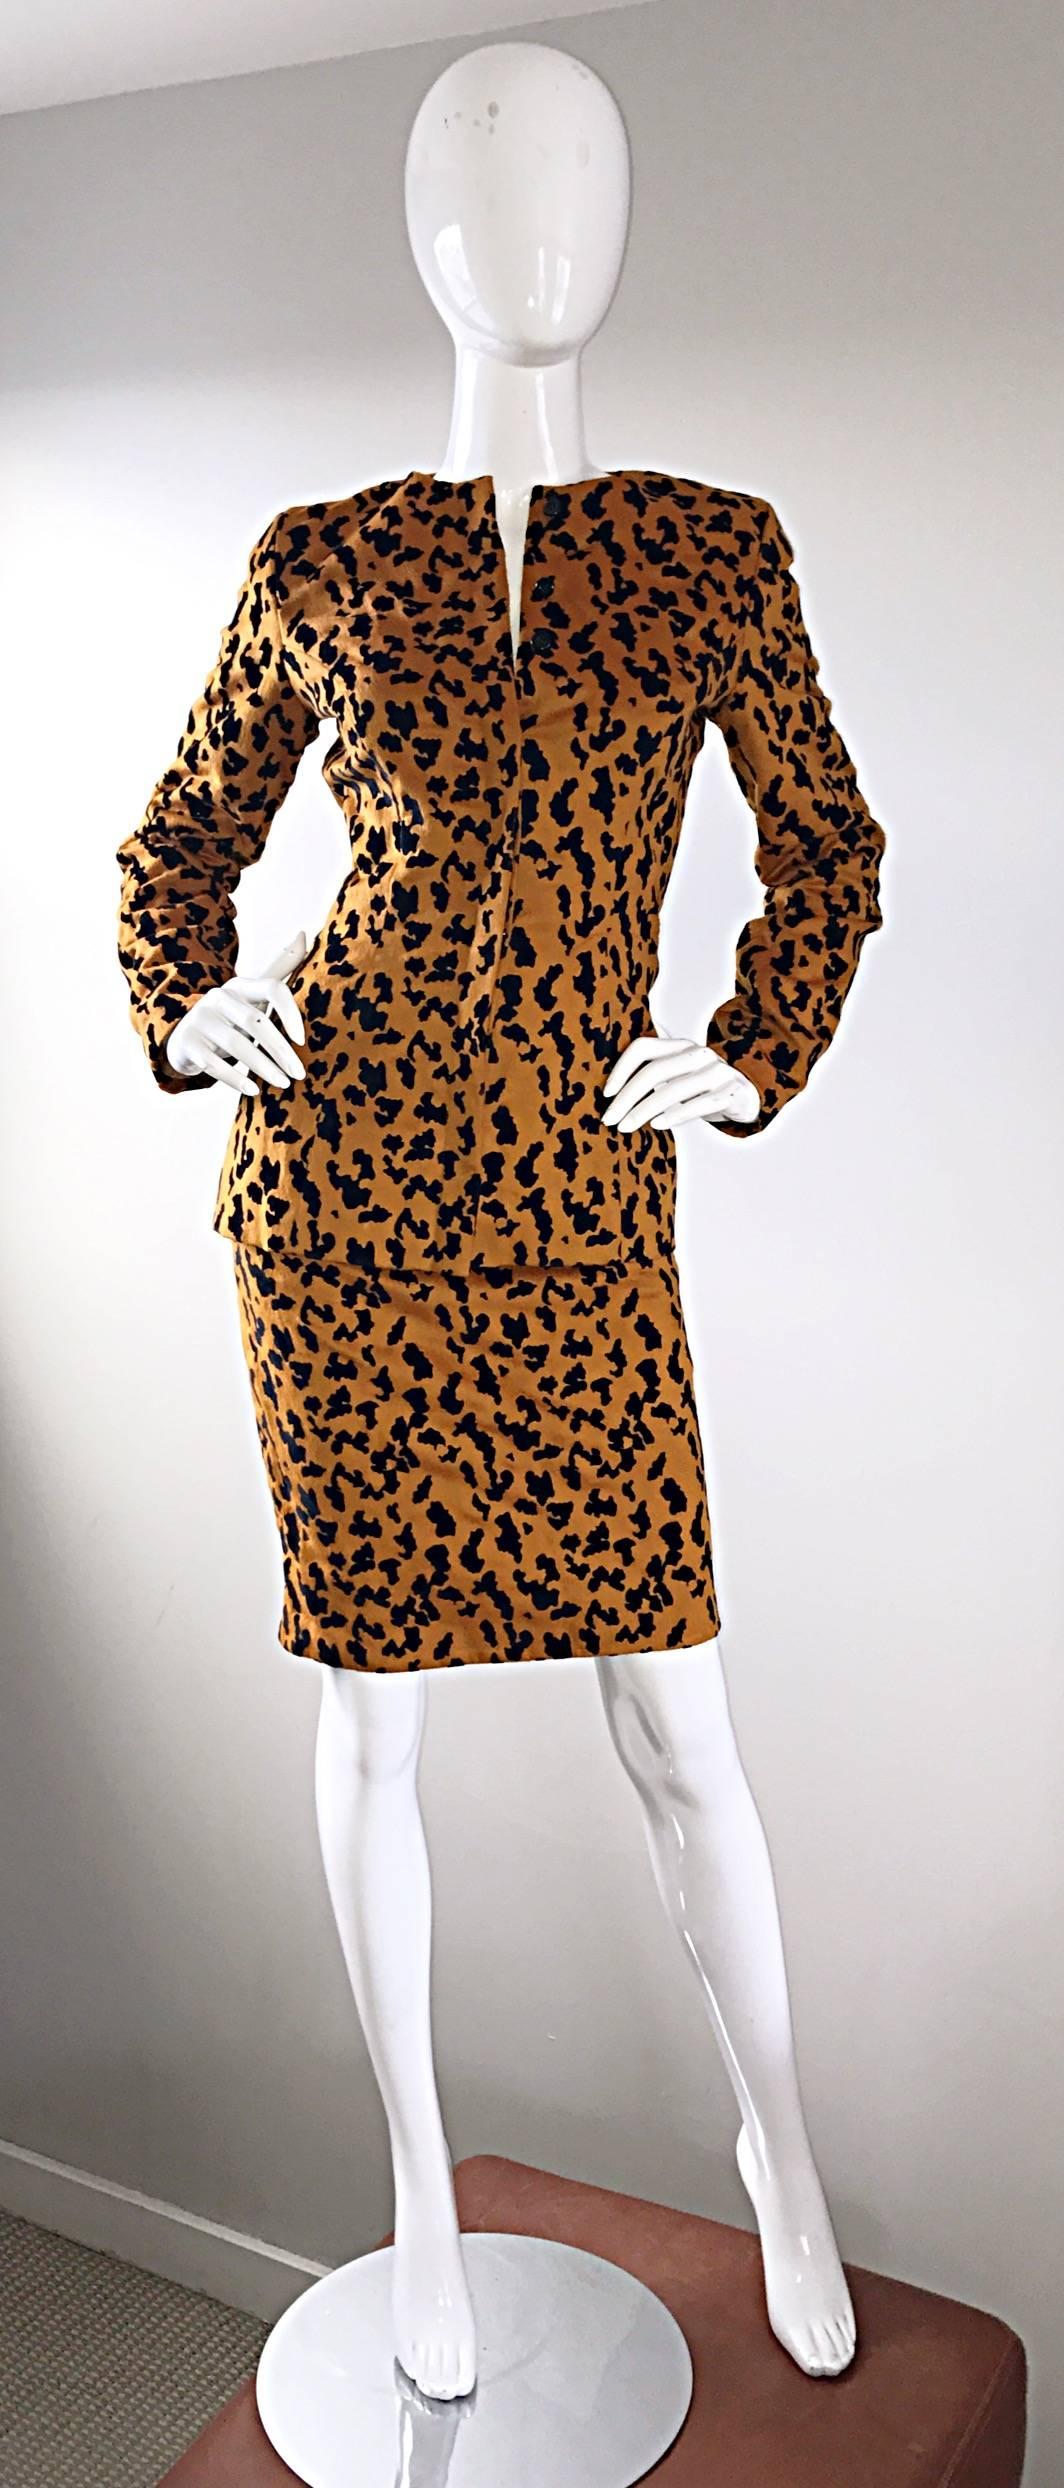 Costume vintage des années 80 VICKY TIEL COUTURE avec jupe en laine et velours imprimé léopard / guépard ! Laine vierge douce de couleur terracotta, avec un imprimé léopard en velours de soie noir. La jupe crayon à taille haute est dotée d'une